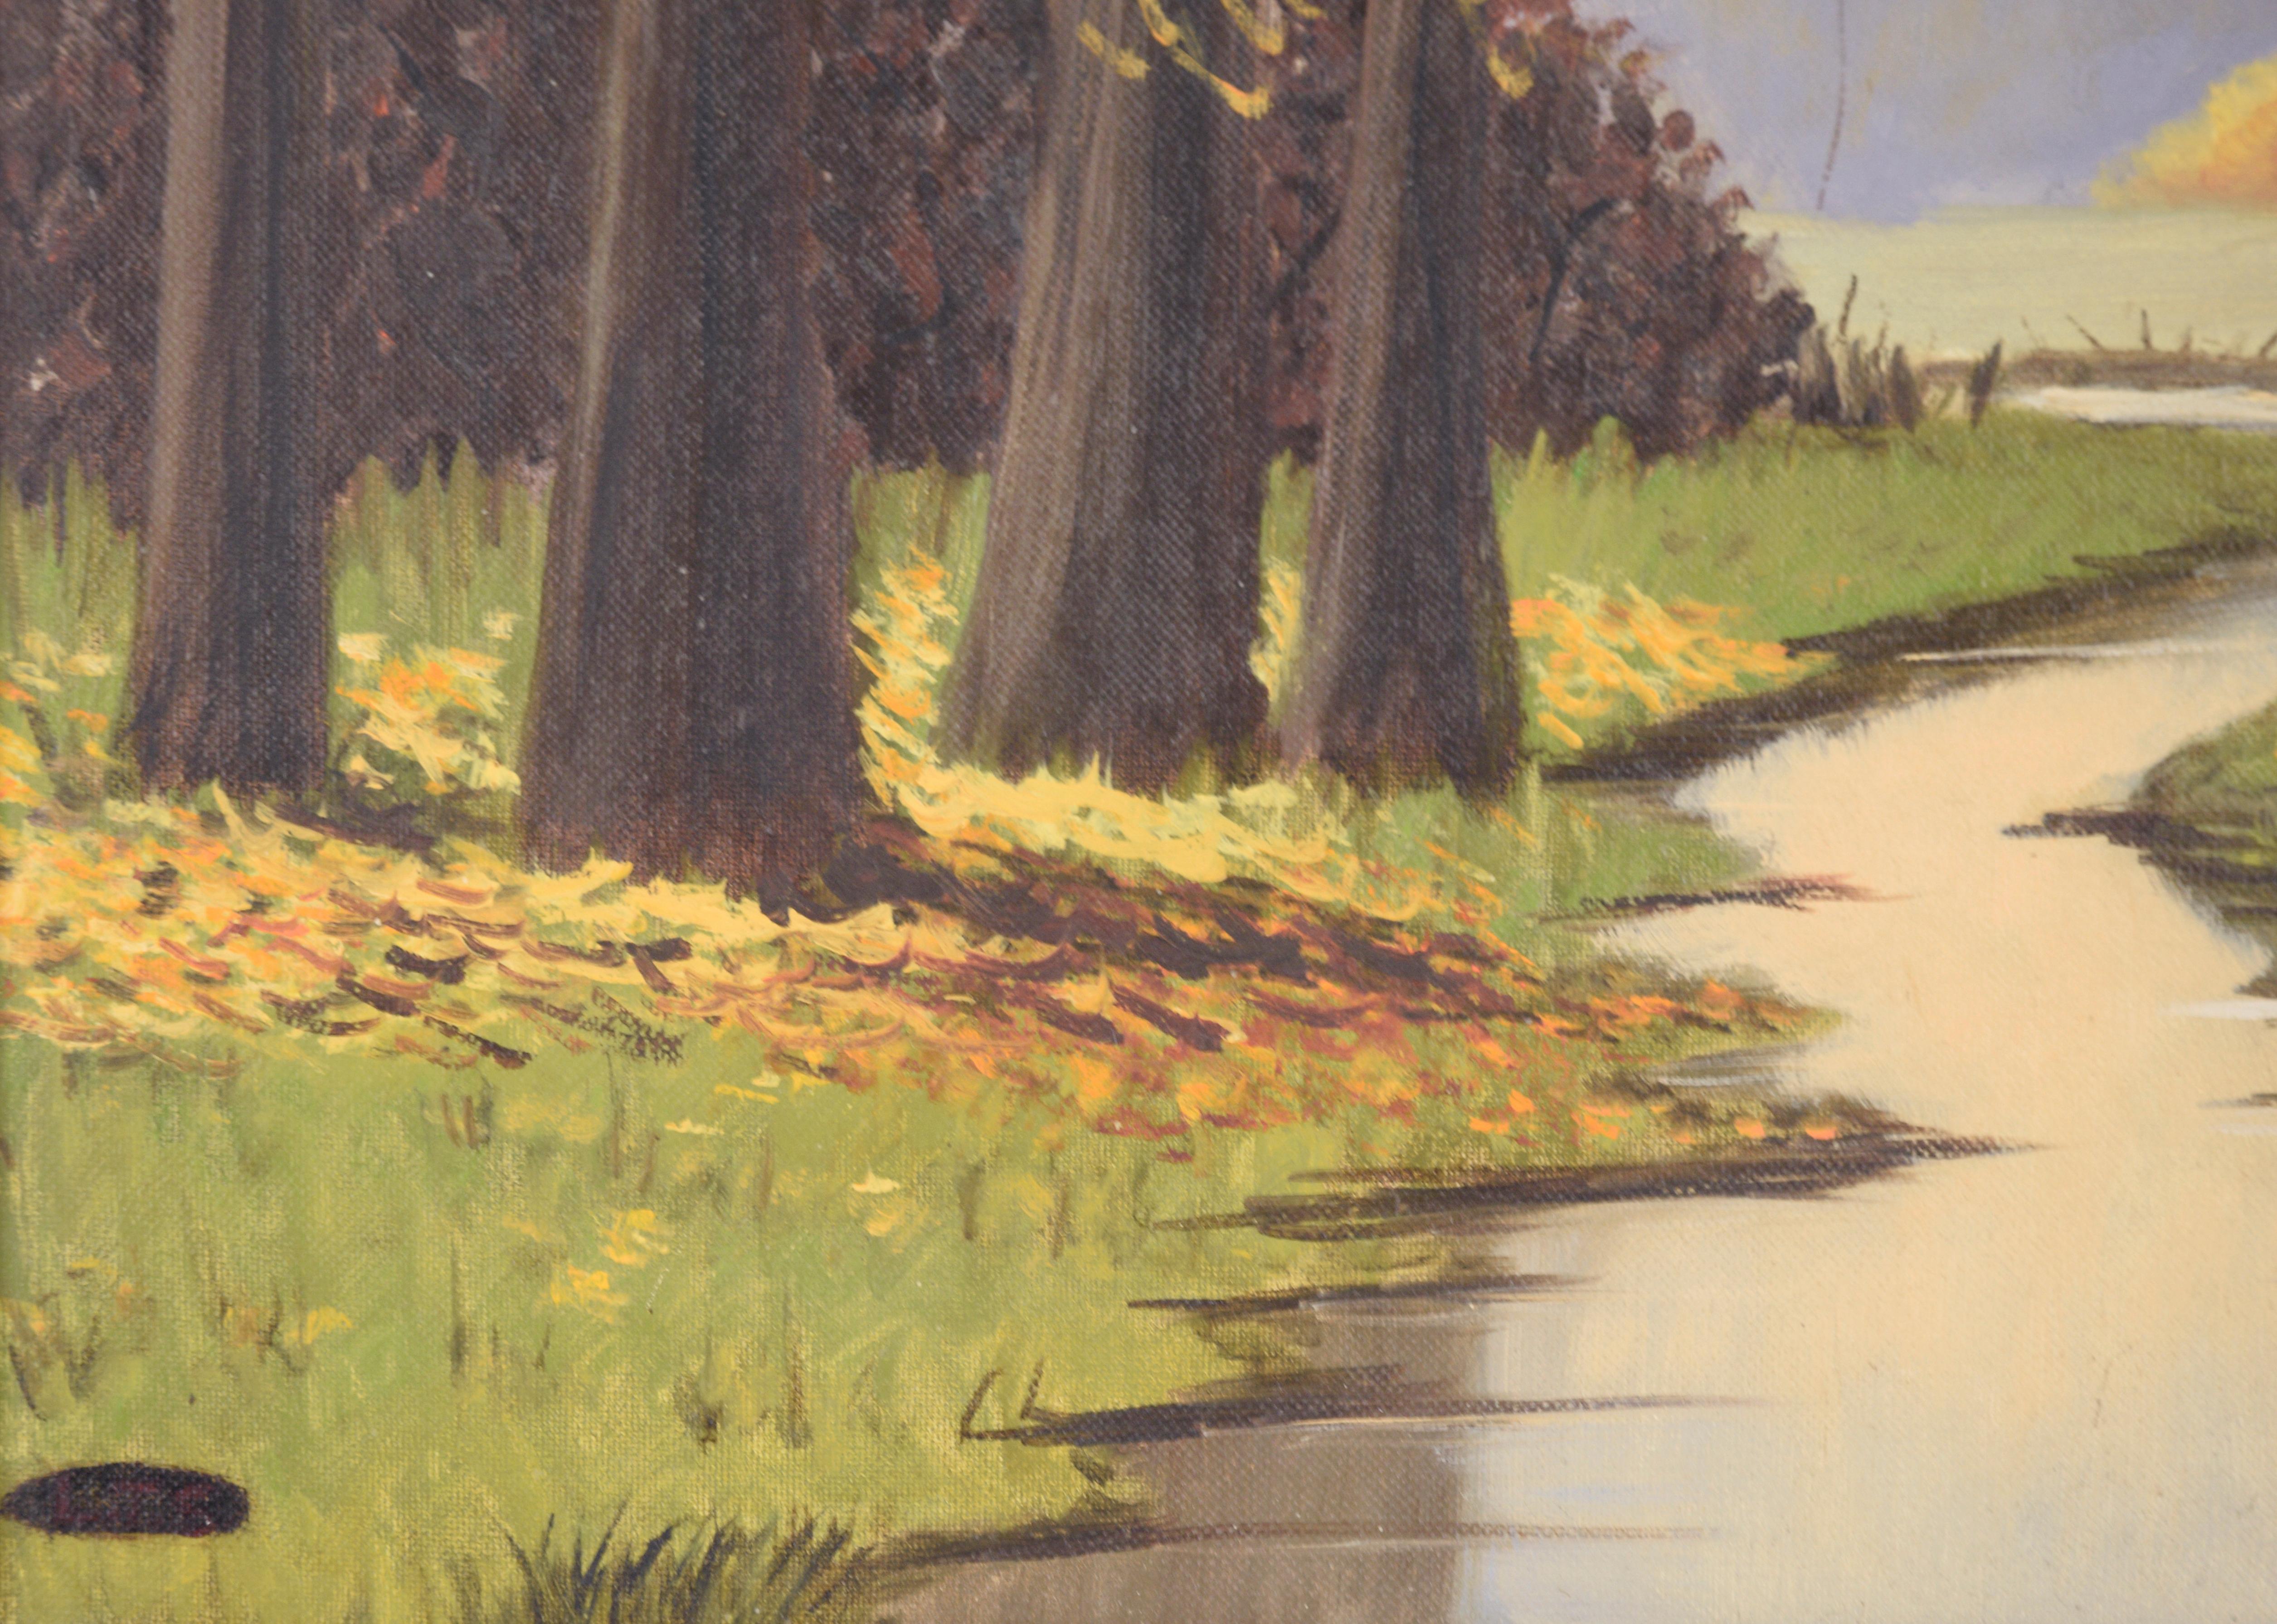 Ruhige Landschaft von Lylia T. Shackelford (20. Jahrhundert). In der Mitte des Bildes fließt ein ruhiger Bach, der auf beiden Seiten von üppigem Gras und hohen Bäumen eingerahmt wird. Hinter den Bäumen und Sträuchern im Vordergrund befindet sich